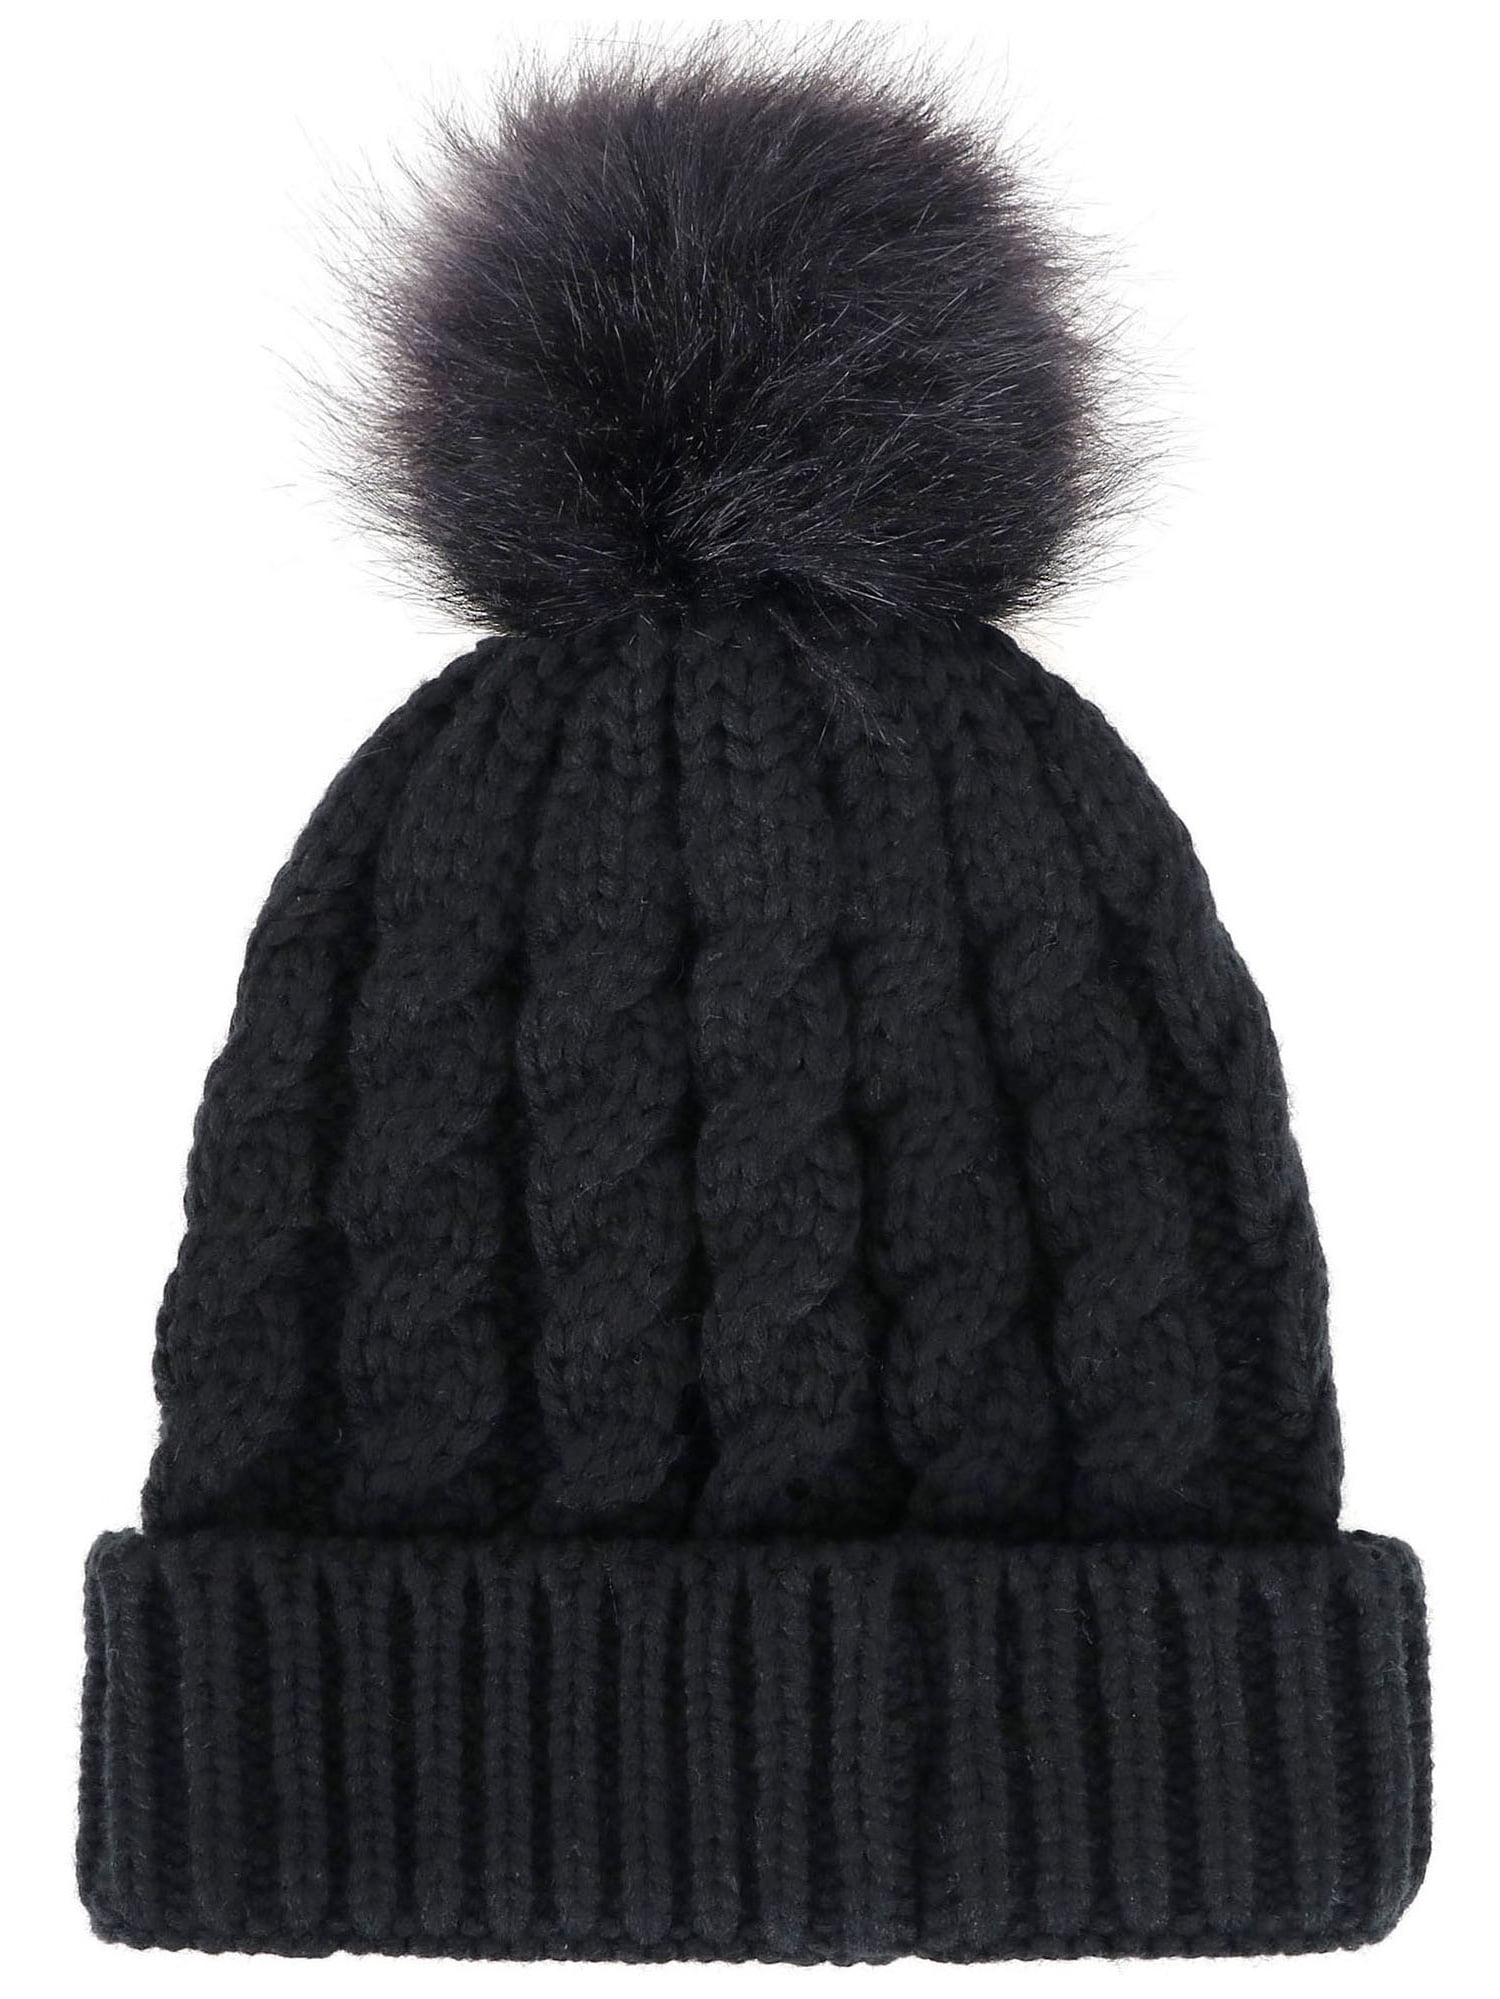 Men Women's Winter Knit Faux Fur Black Pom Hat Walmart.com